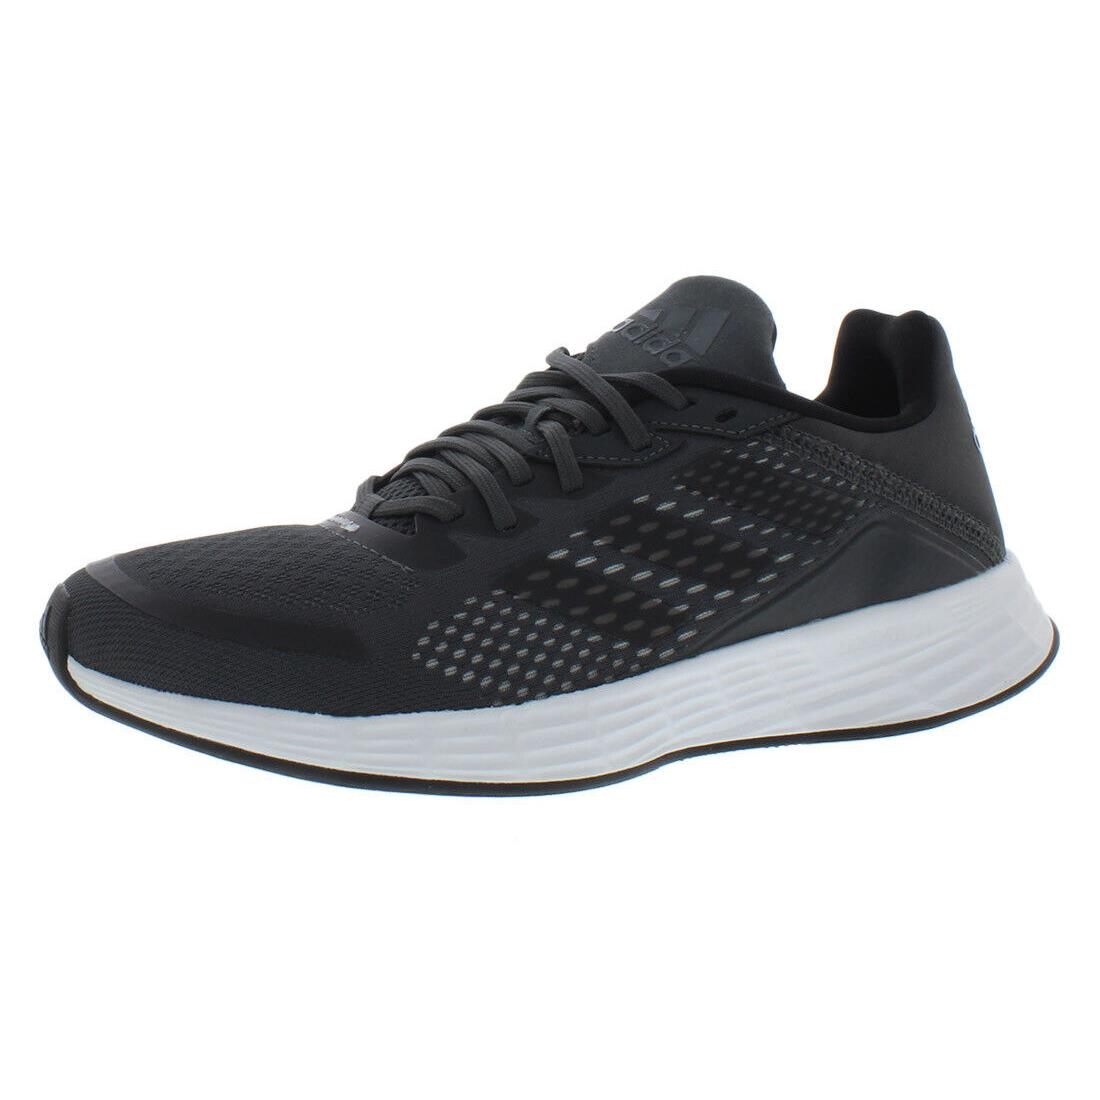 Adidas Duramo Sl Mens Shoes Size 6 Color: Grey/grey/grey - Grey/Grey/Grey, Main: Grey